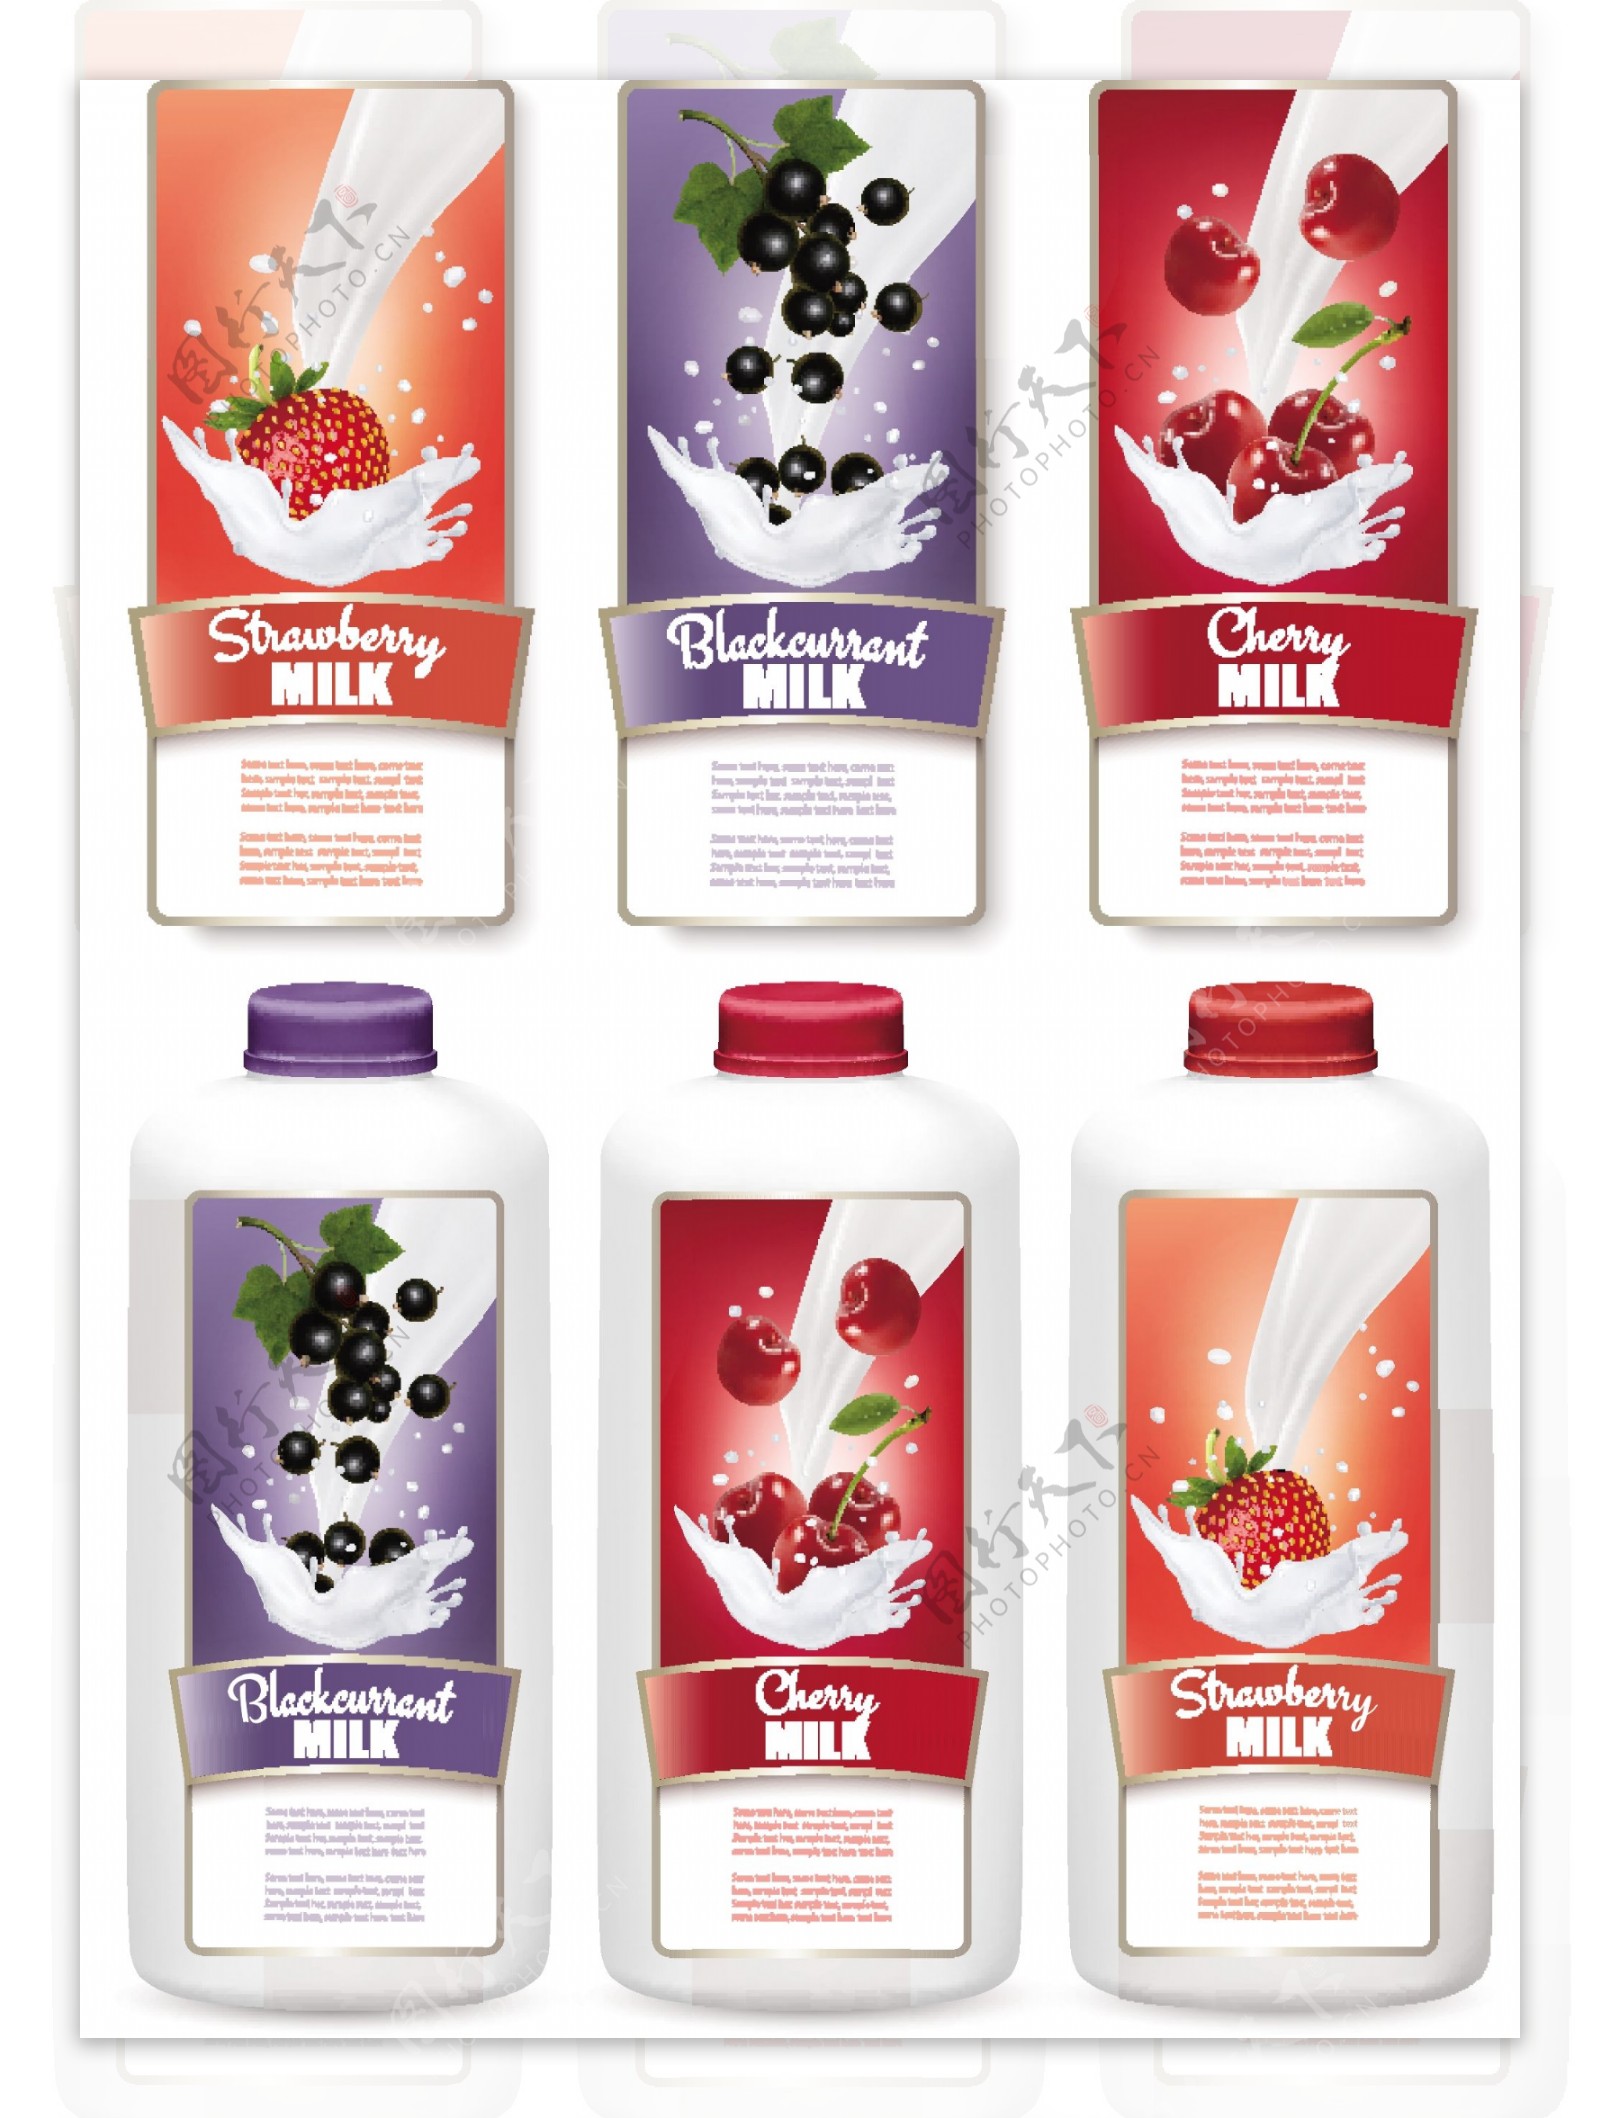 水果牛奶商标贴纸矢量素材下载